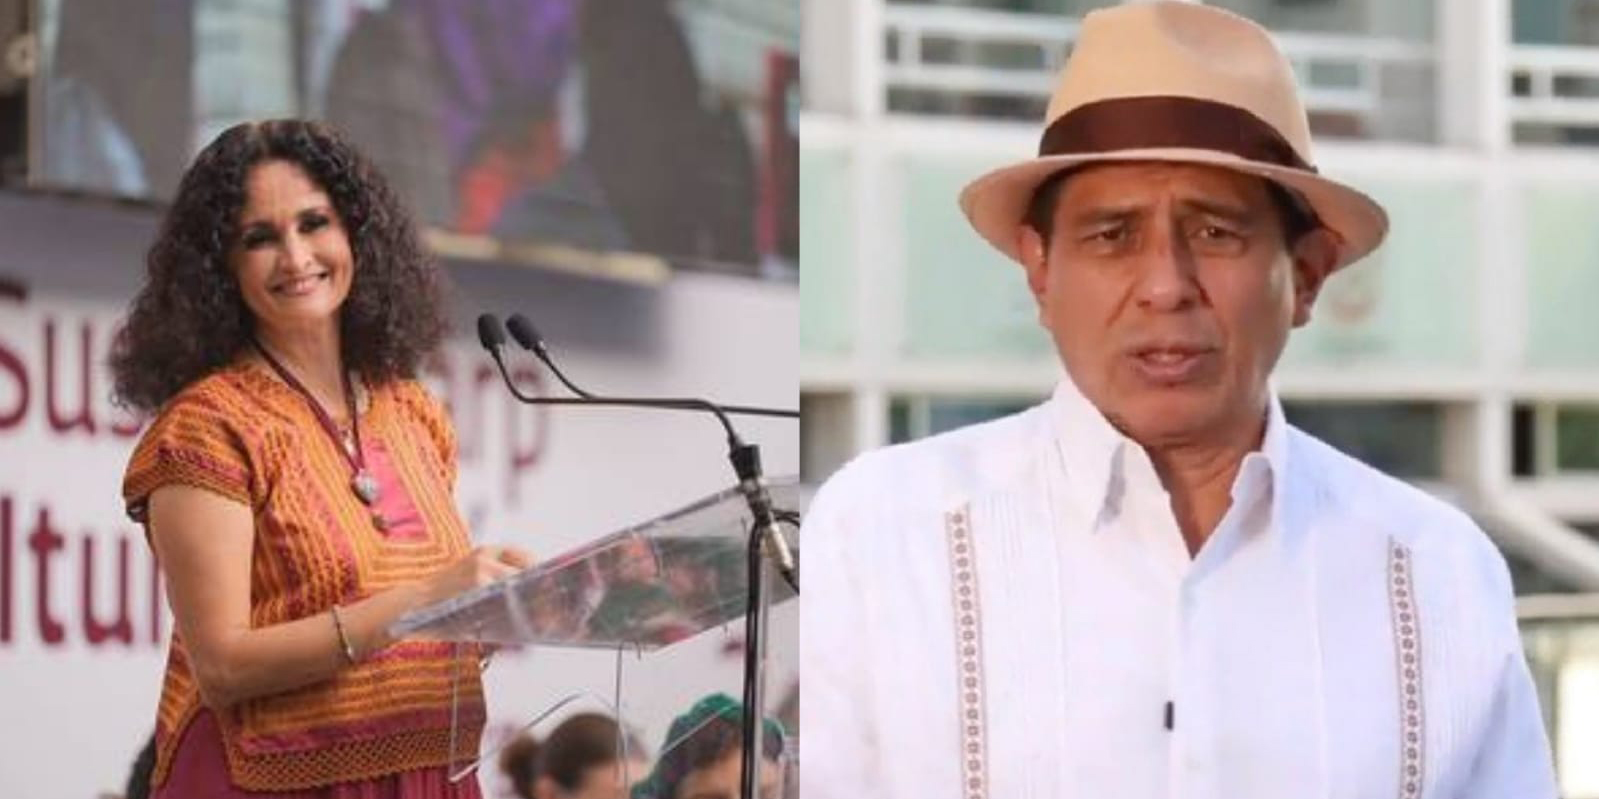 Lideran Harp y Jara votación del consejo nacional Morenista | El Imparcial de Oaxaca